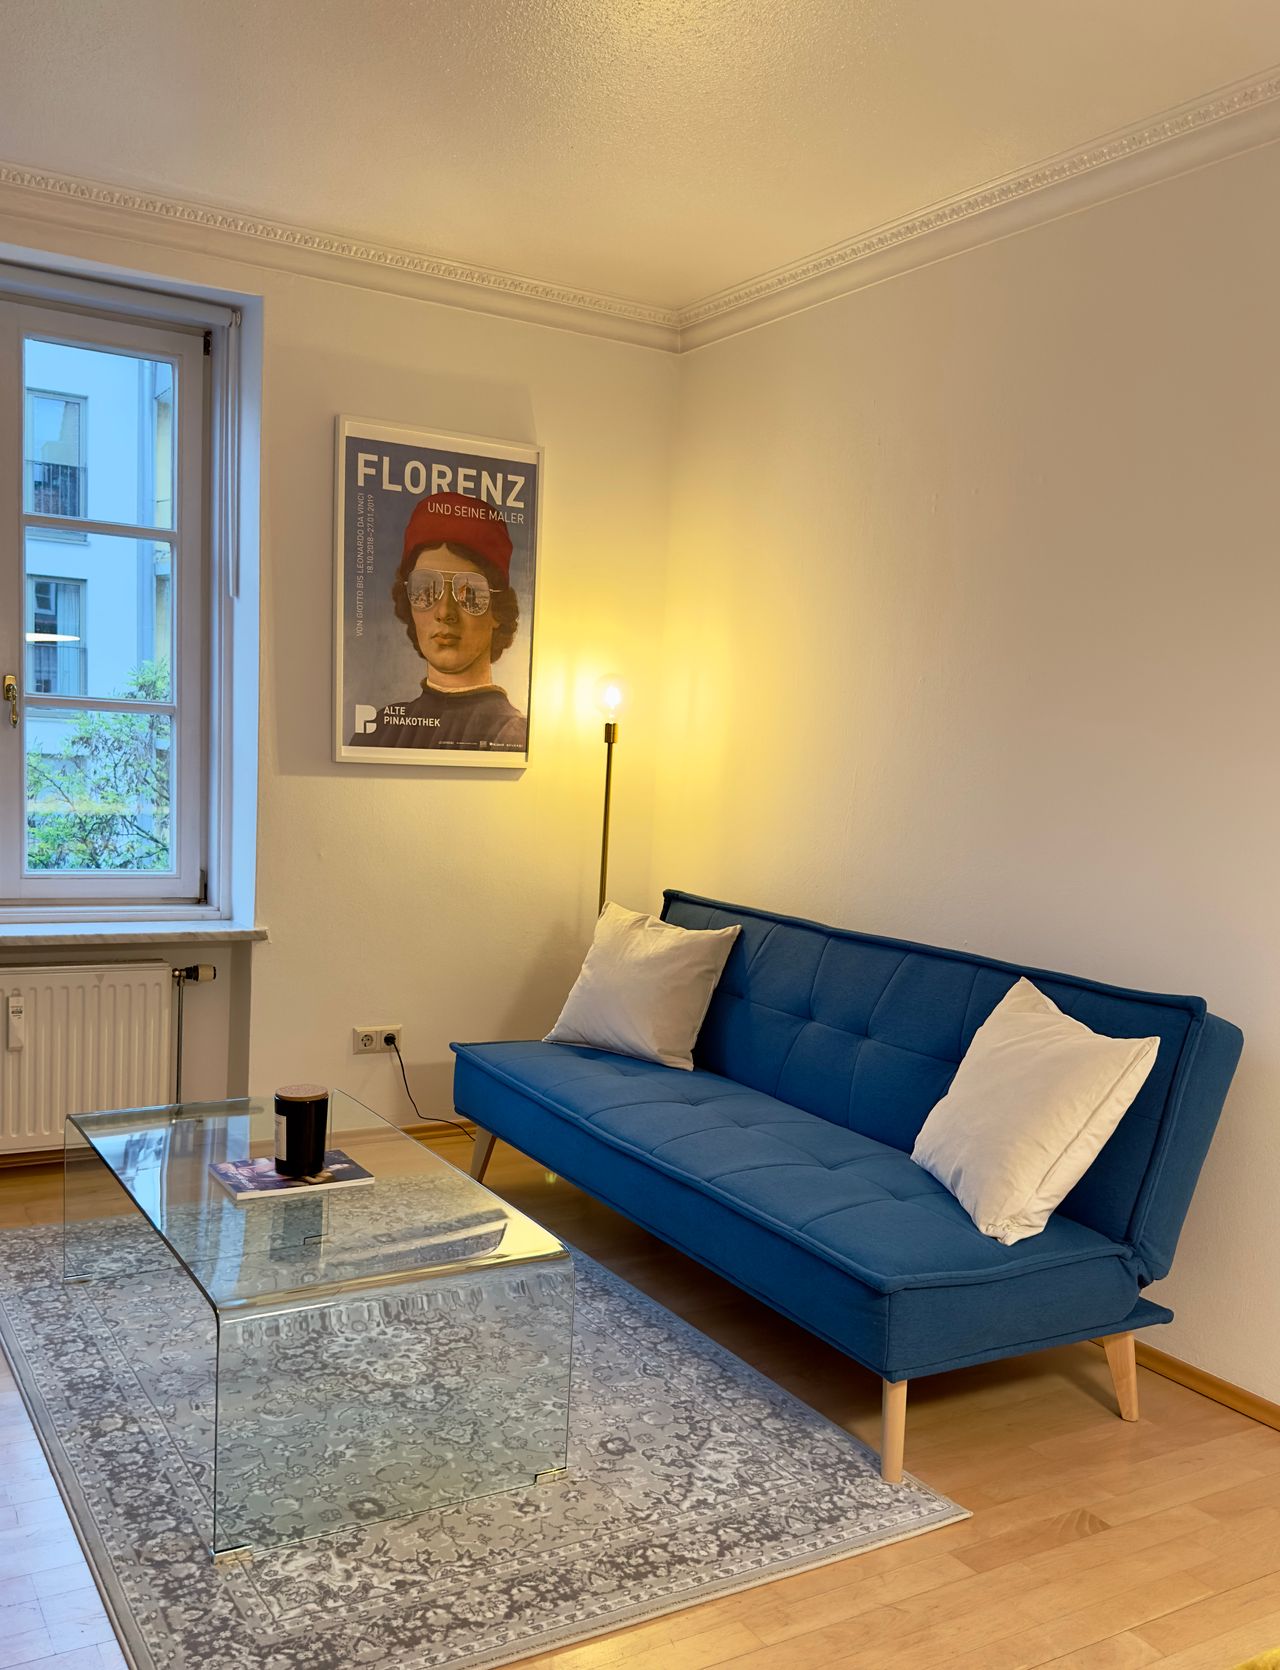 All-Inclusive Apartment at Gärtnerplatzviertel